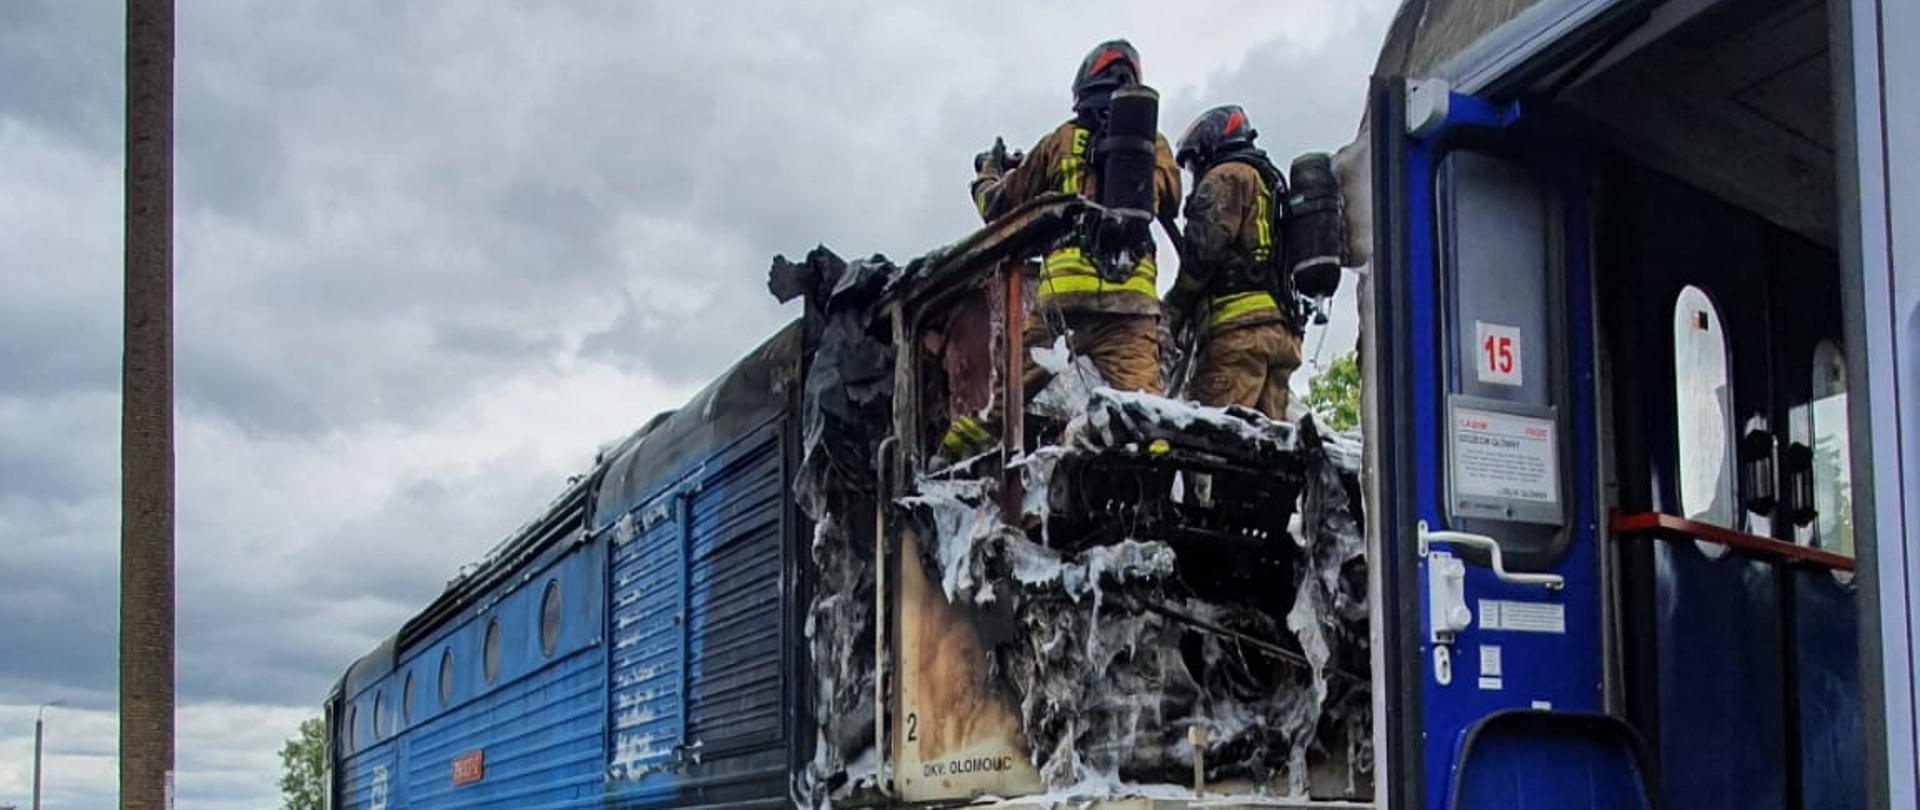 Widok na lokomotywę ze spaloną kabiną maszynistów, w której stoi dwóch strażaków